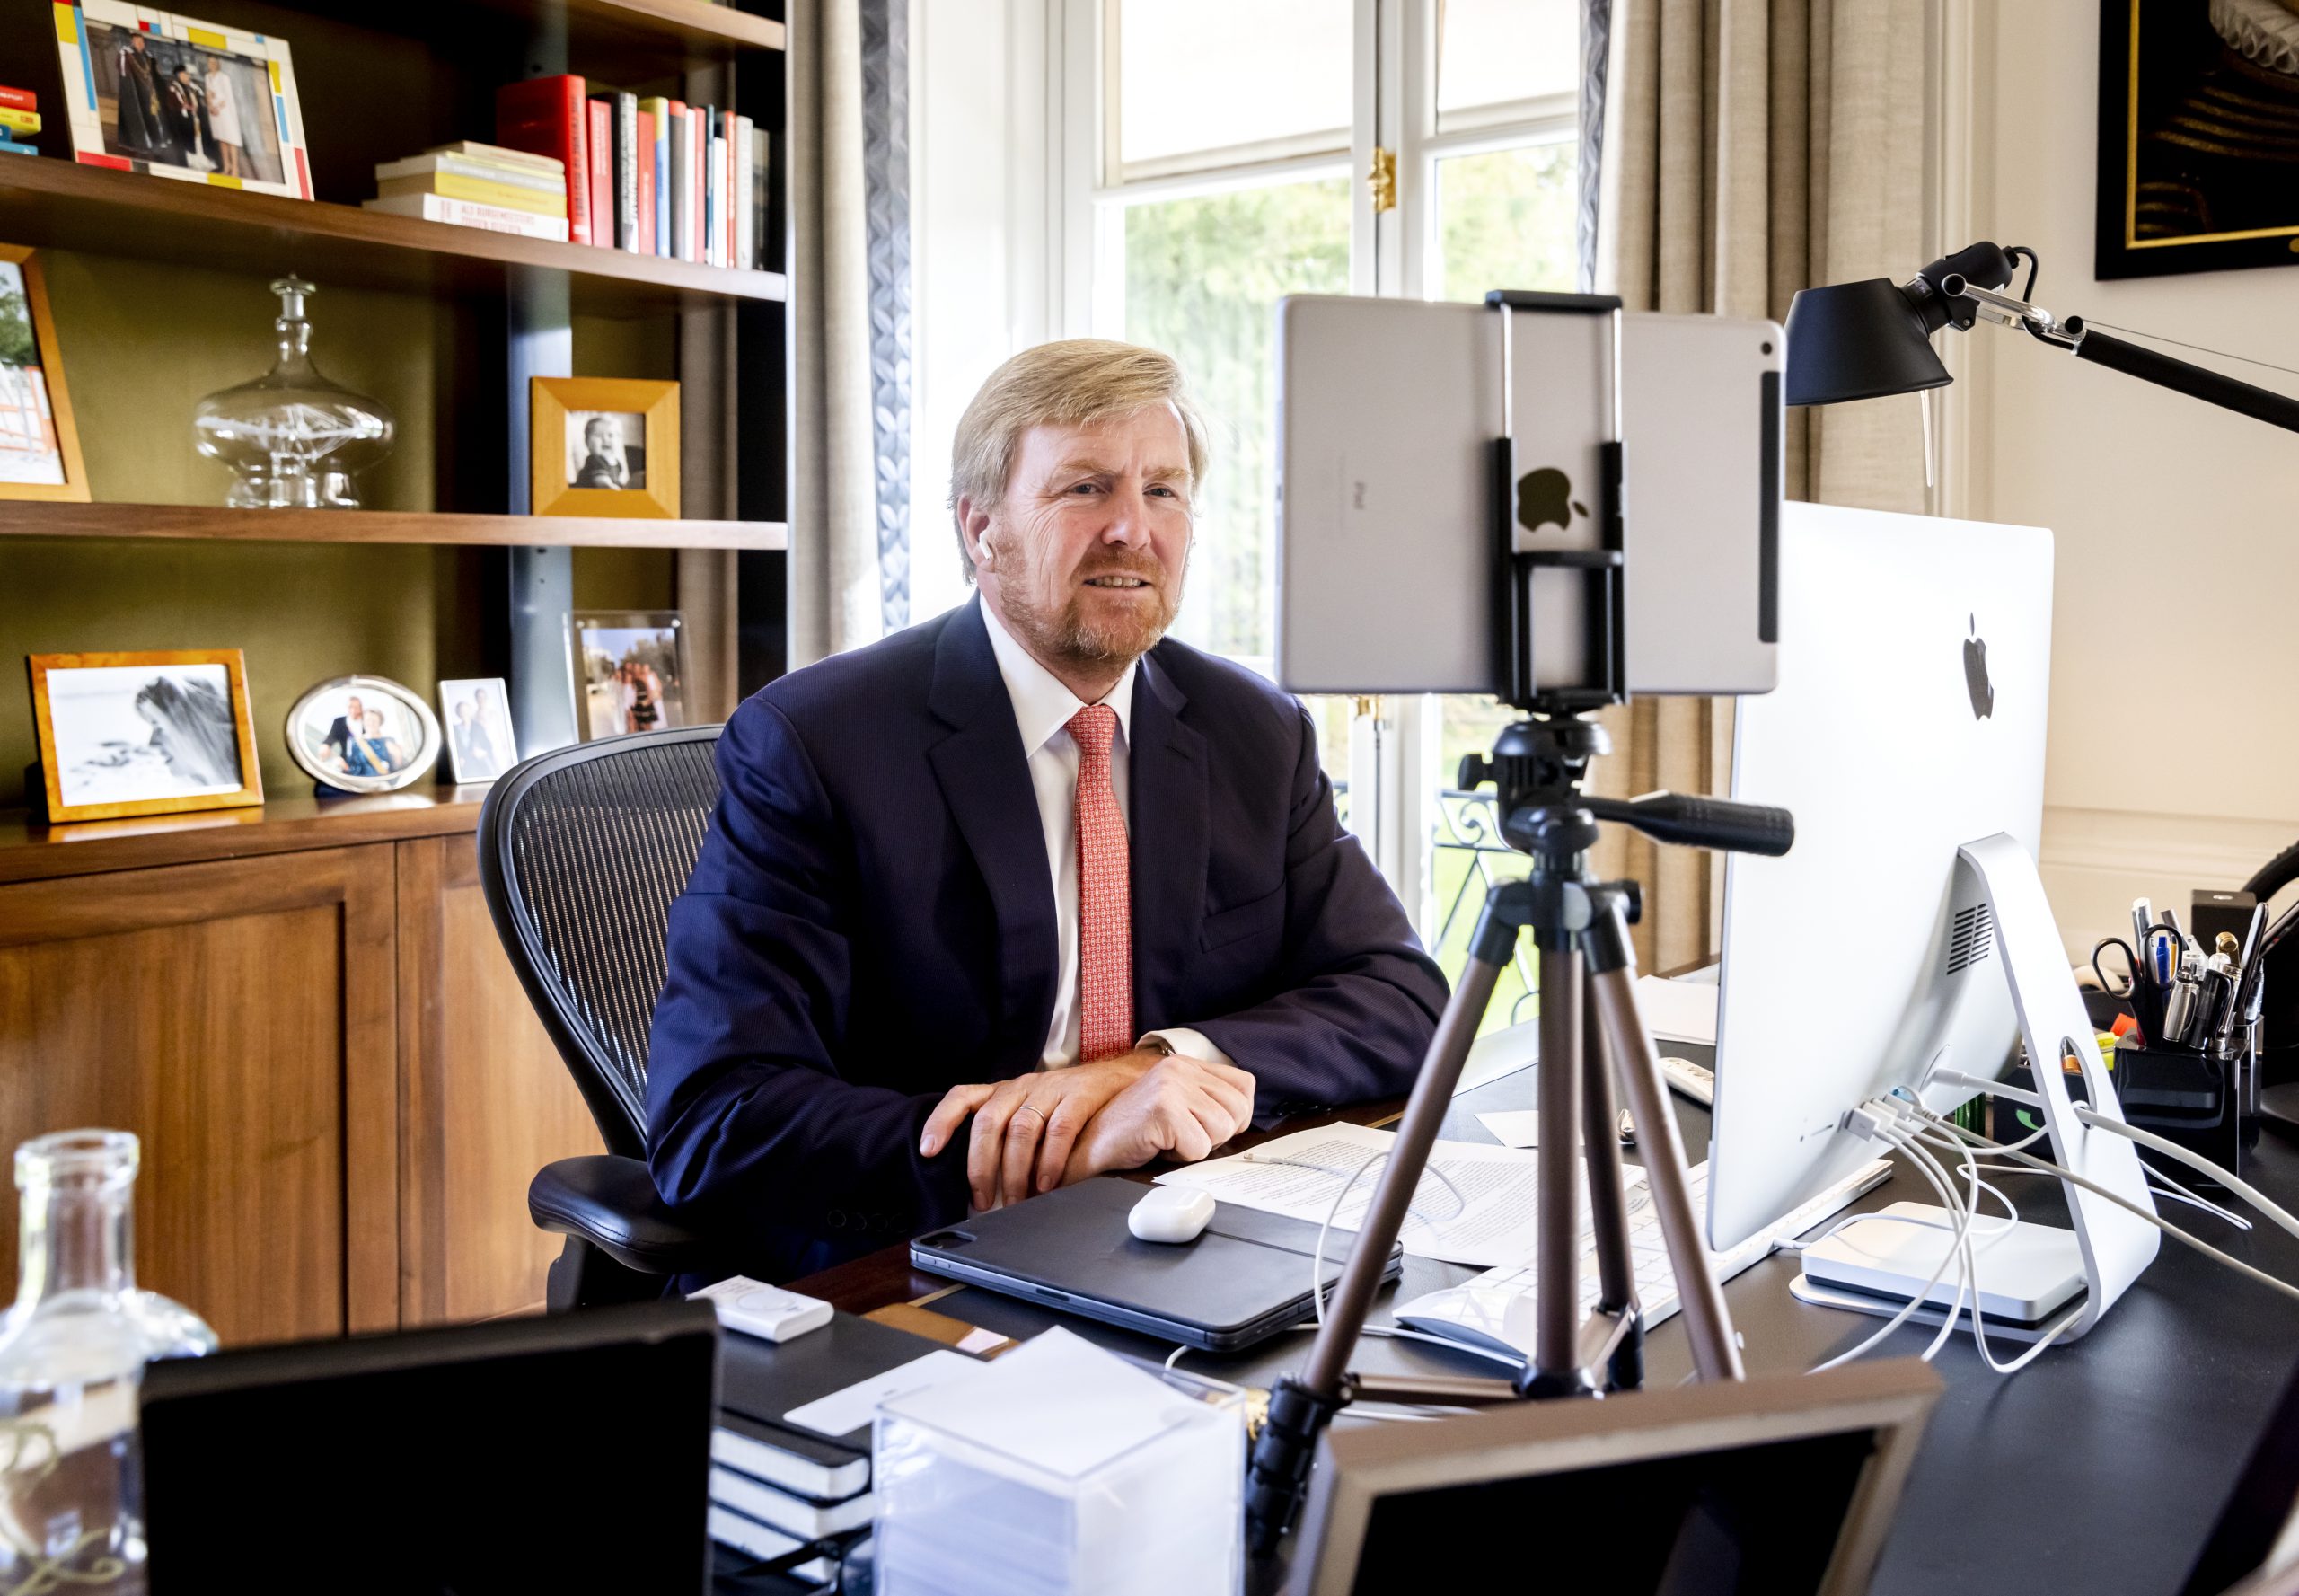 Koning Willem-Alexander voert een videogesprek. Foto: ANP/Remko de Waal